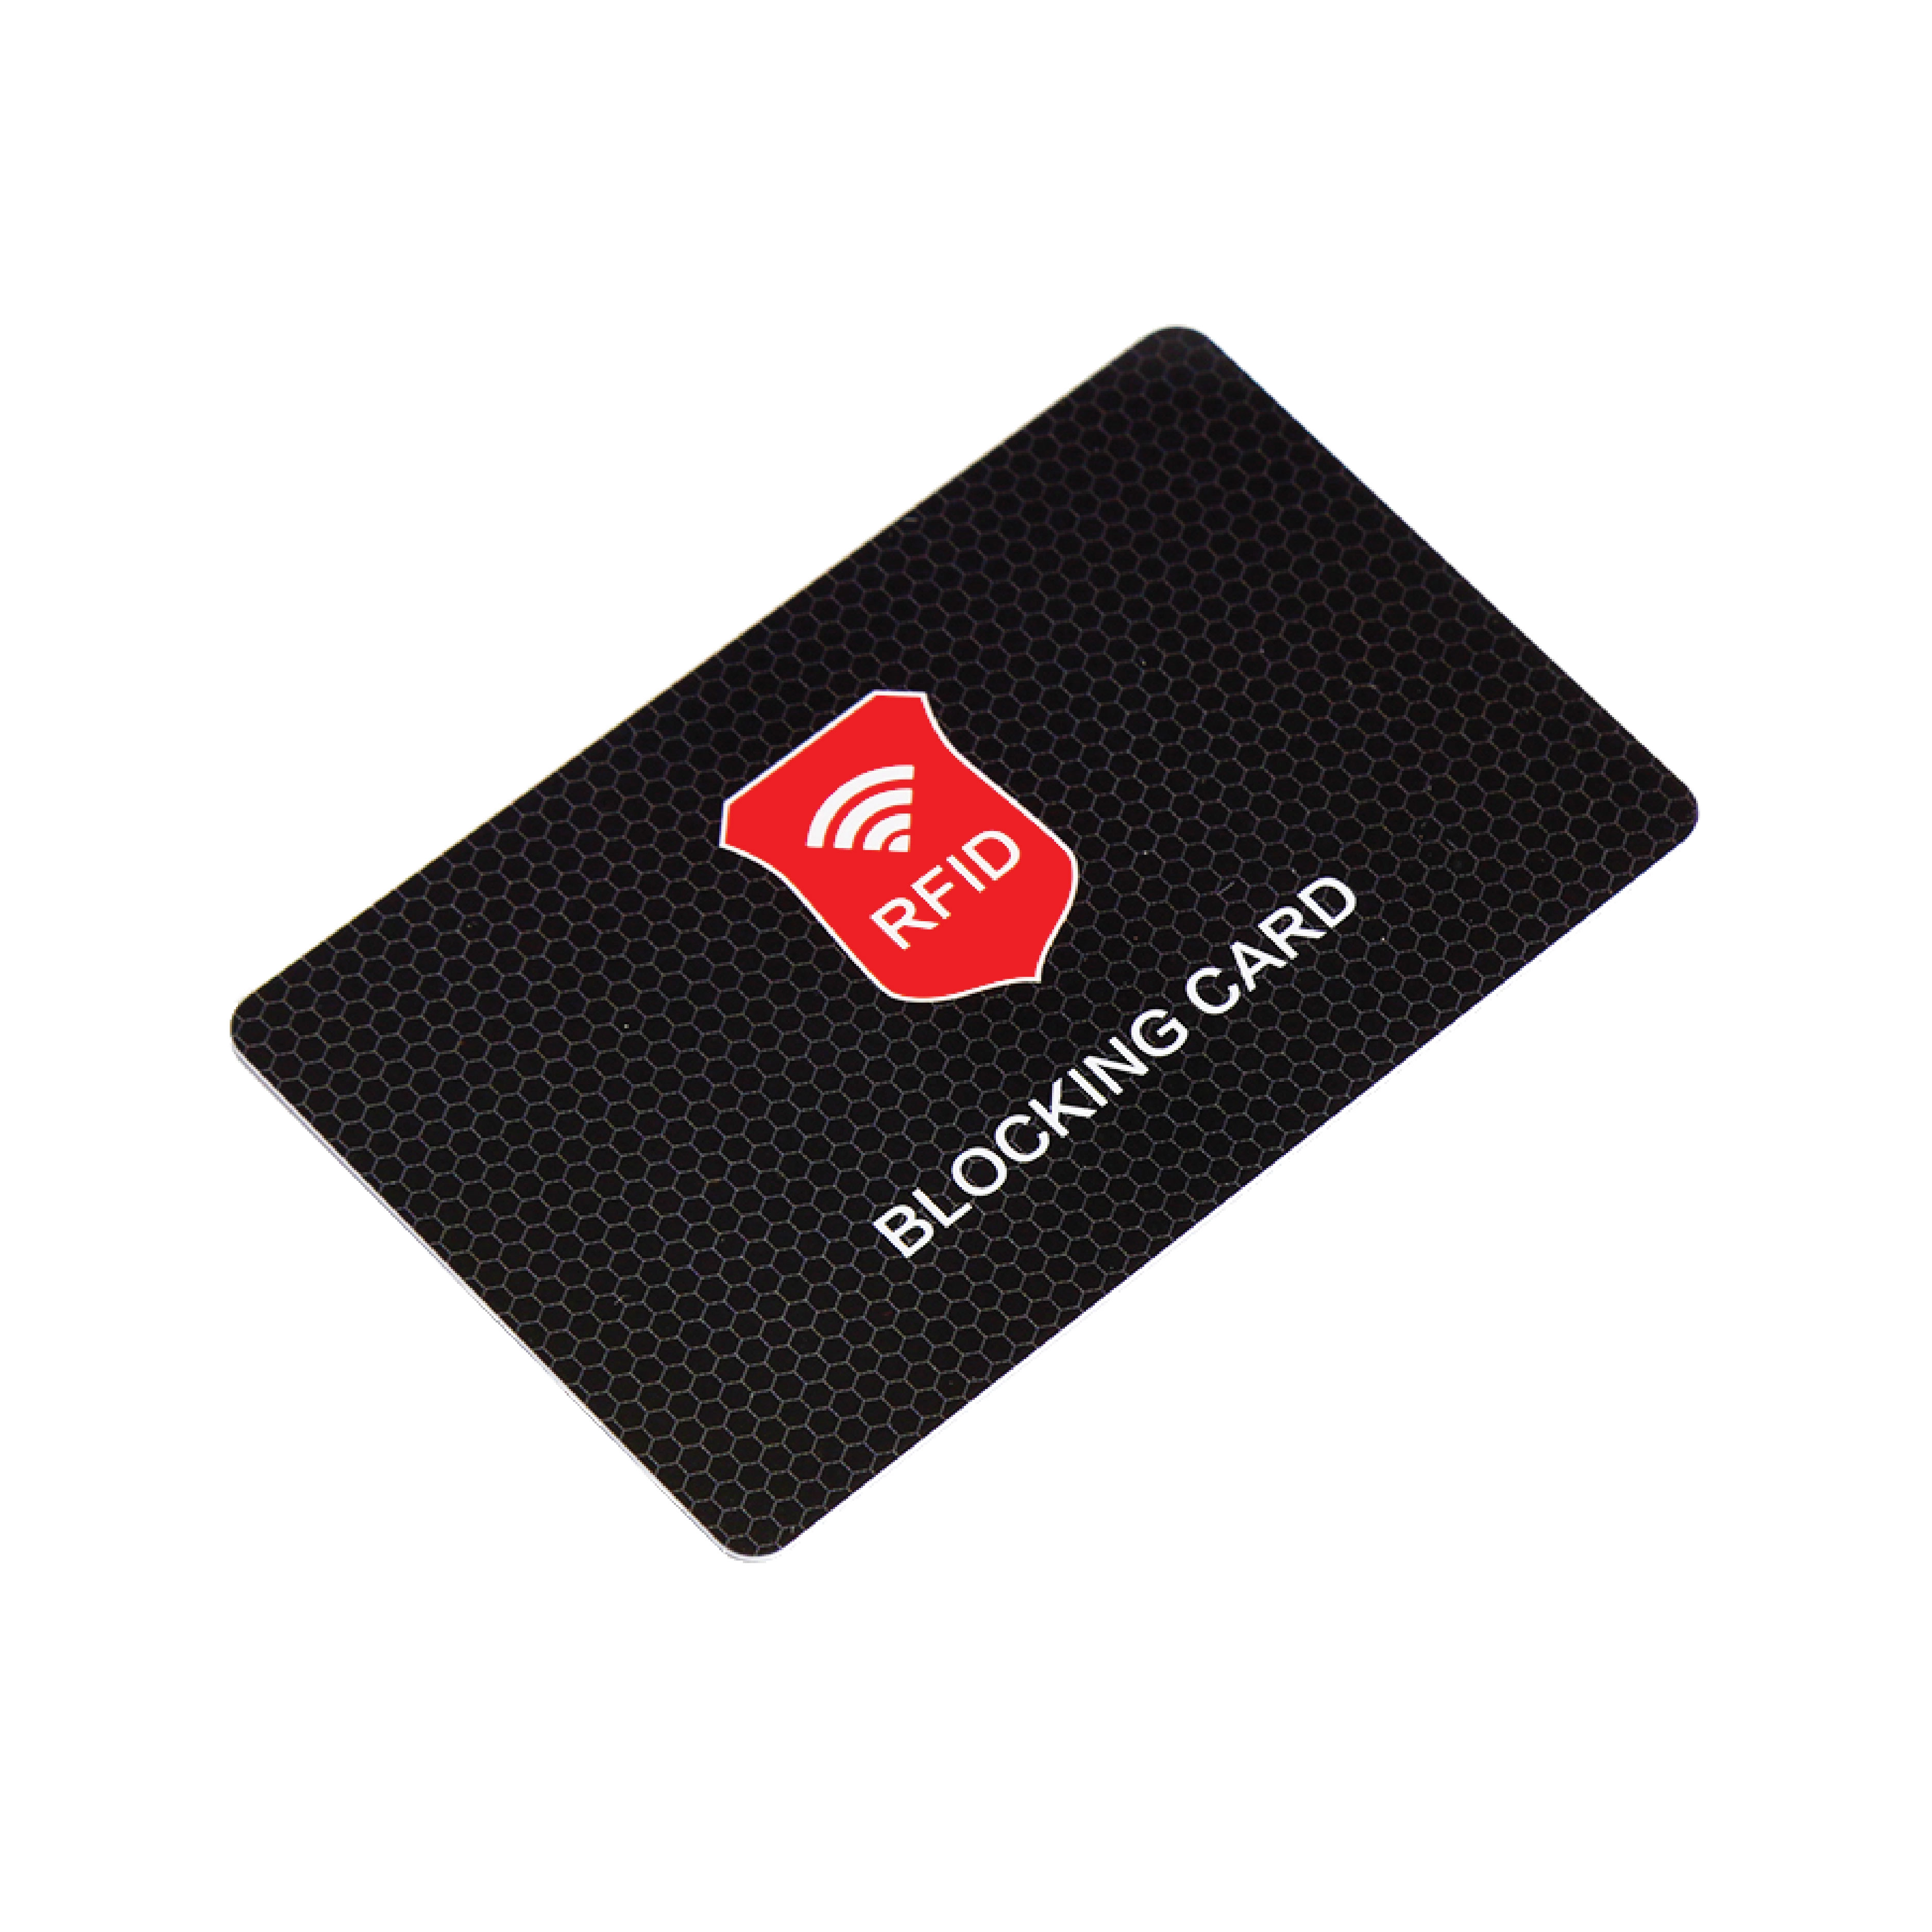 RFID-blockierender Kartenschutz